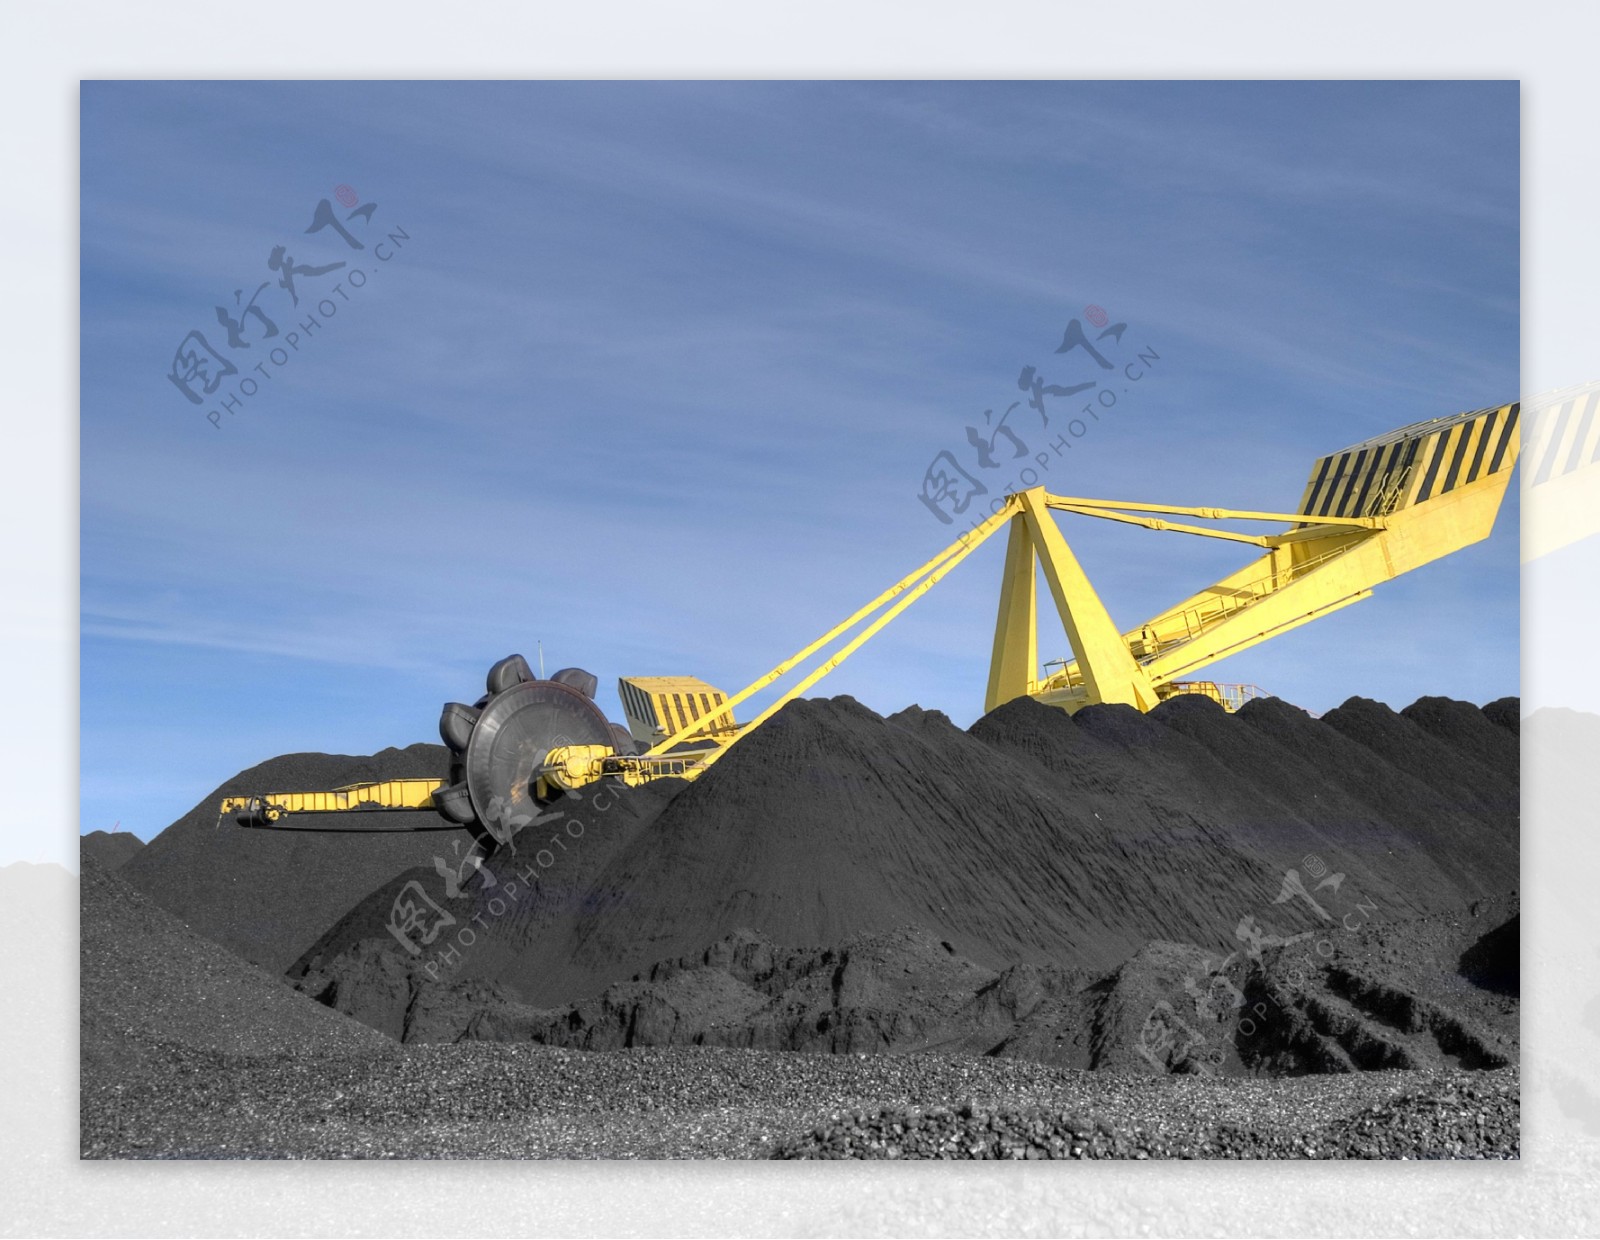 煤炭煤场图片